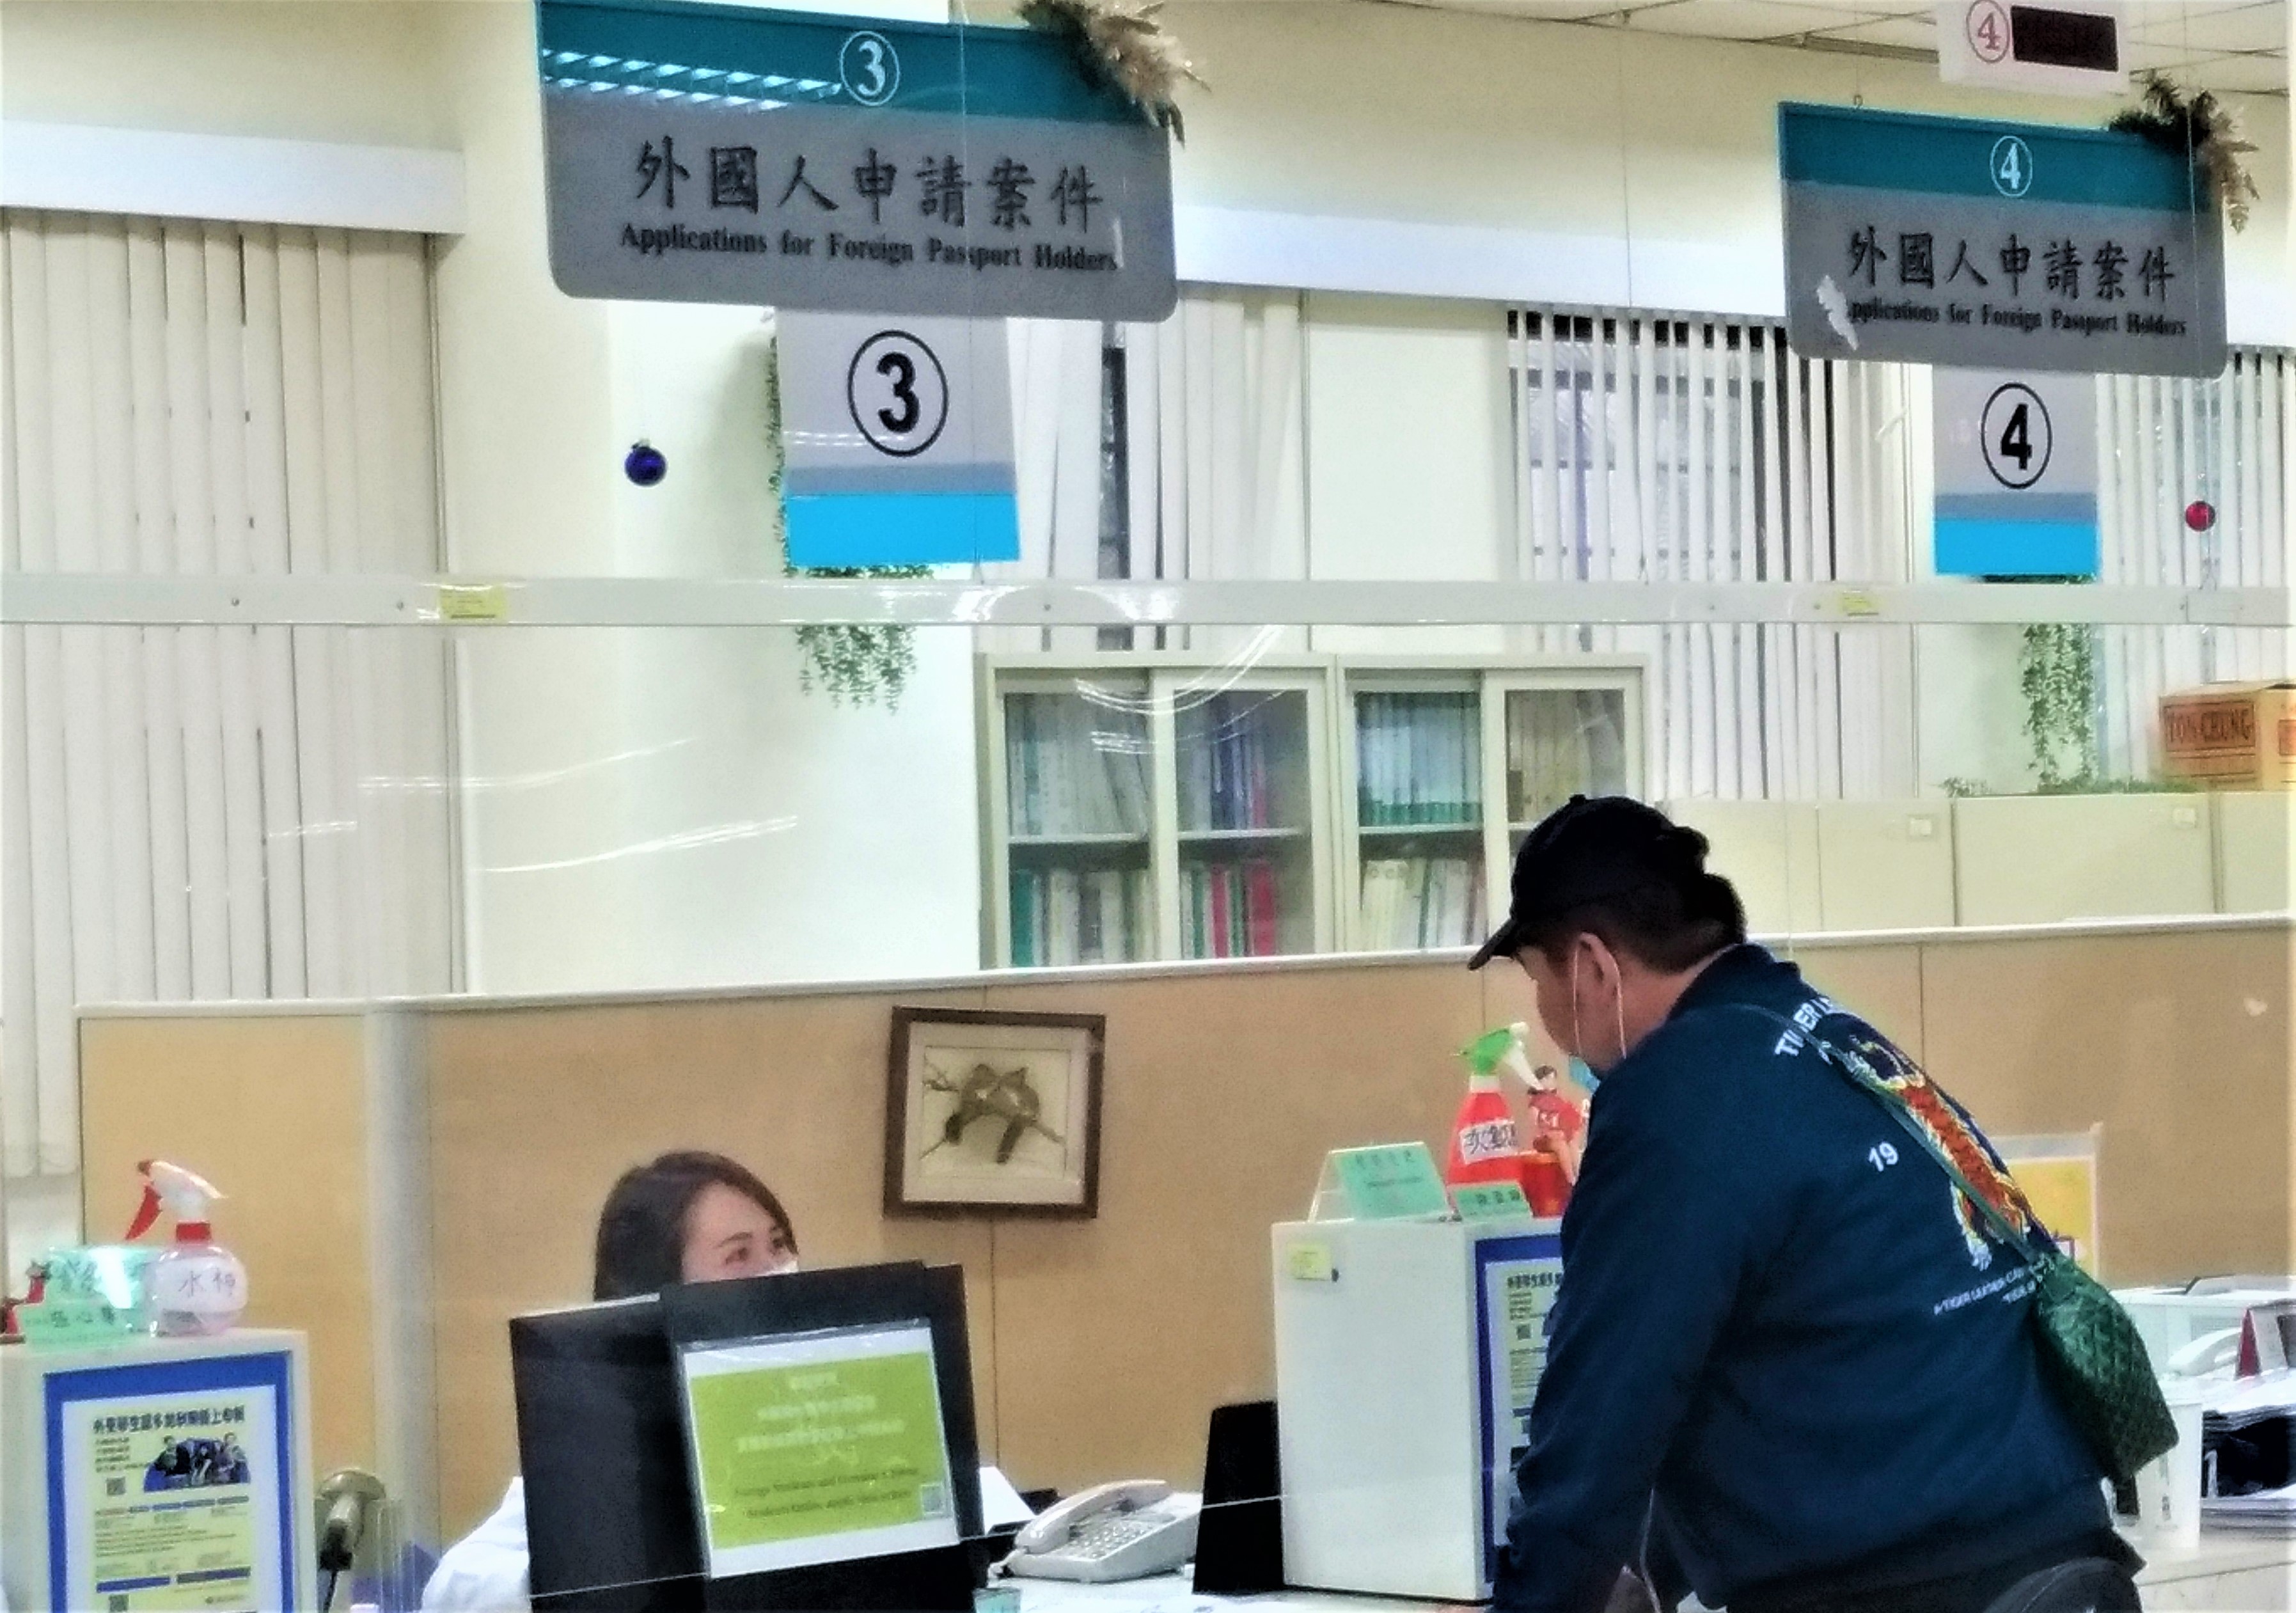 Melihat situasi pandemi dalam negeri, Agensi Imigrasi Nasional kembali mengumumkan bahwa izin tinggal dari semua warga asing yang tengah menetap di Taiwan semenjak dan sebelum periode 21 Maret 2020 akan diperpanjang secara otomatis. Ini adalah ketiga belas kalinya kebijakan ini diresmikan bagi penduduk Taiwan yang berasal dari luar negeri. Sumber: Agensi Imigrasi Nasional